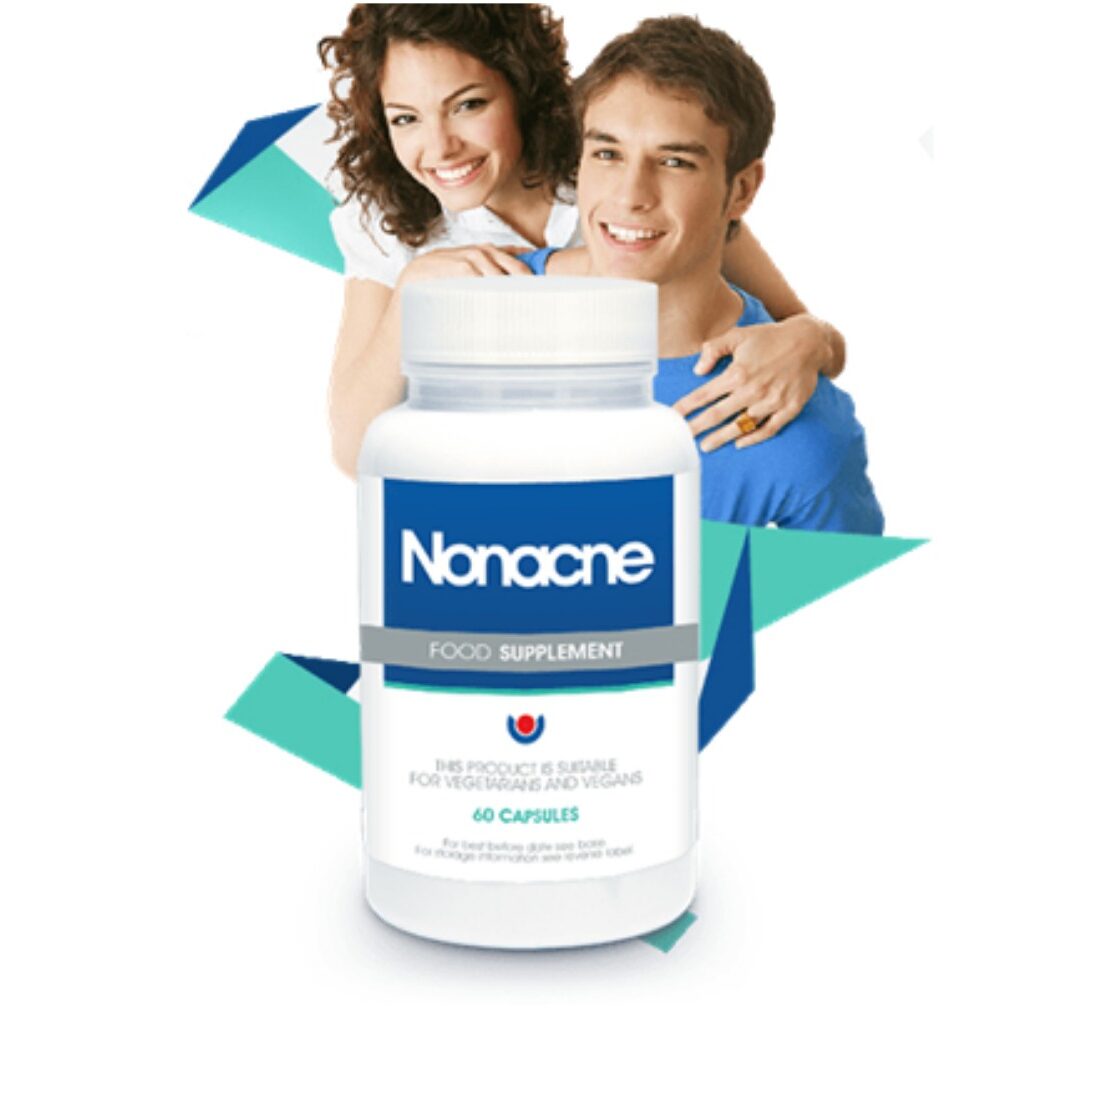 Nonacne-For Skin Acne